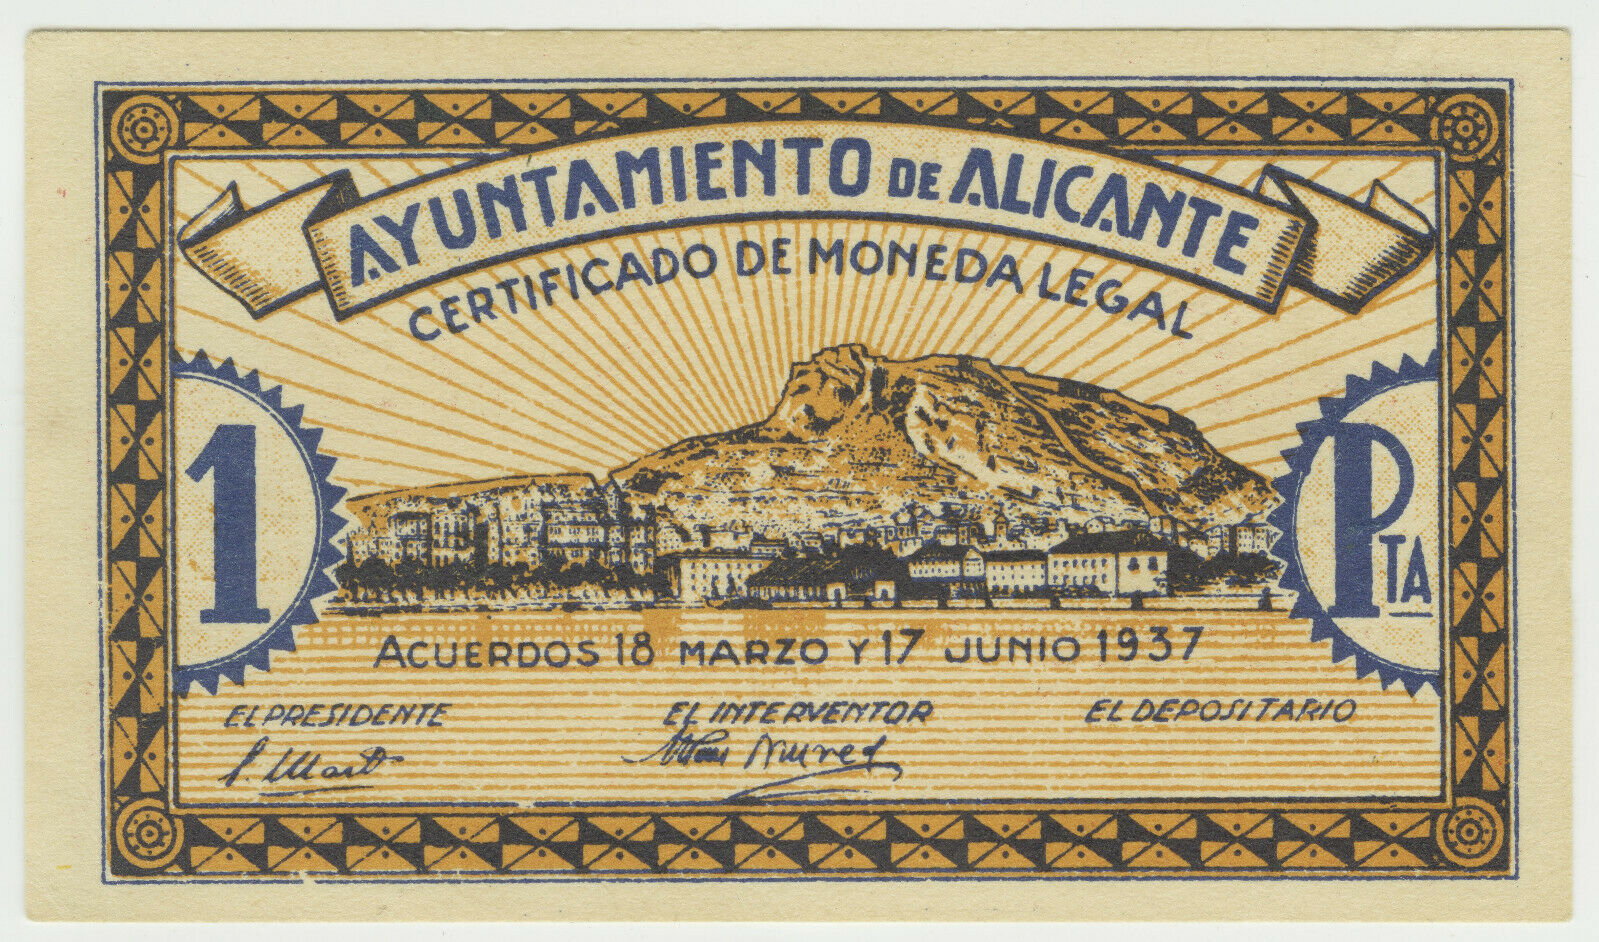 Alicante-1937-1-Peseta-obv.jpg